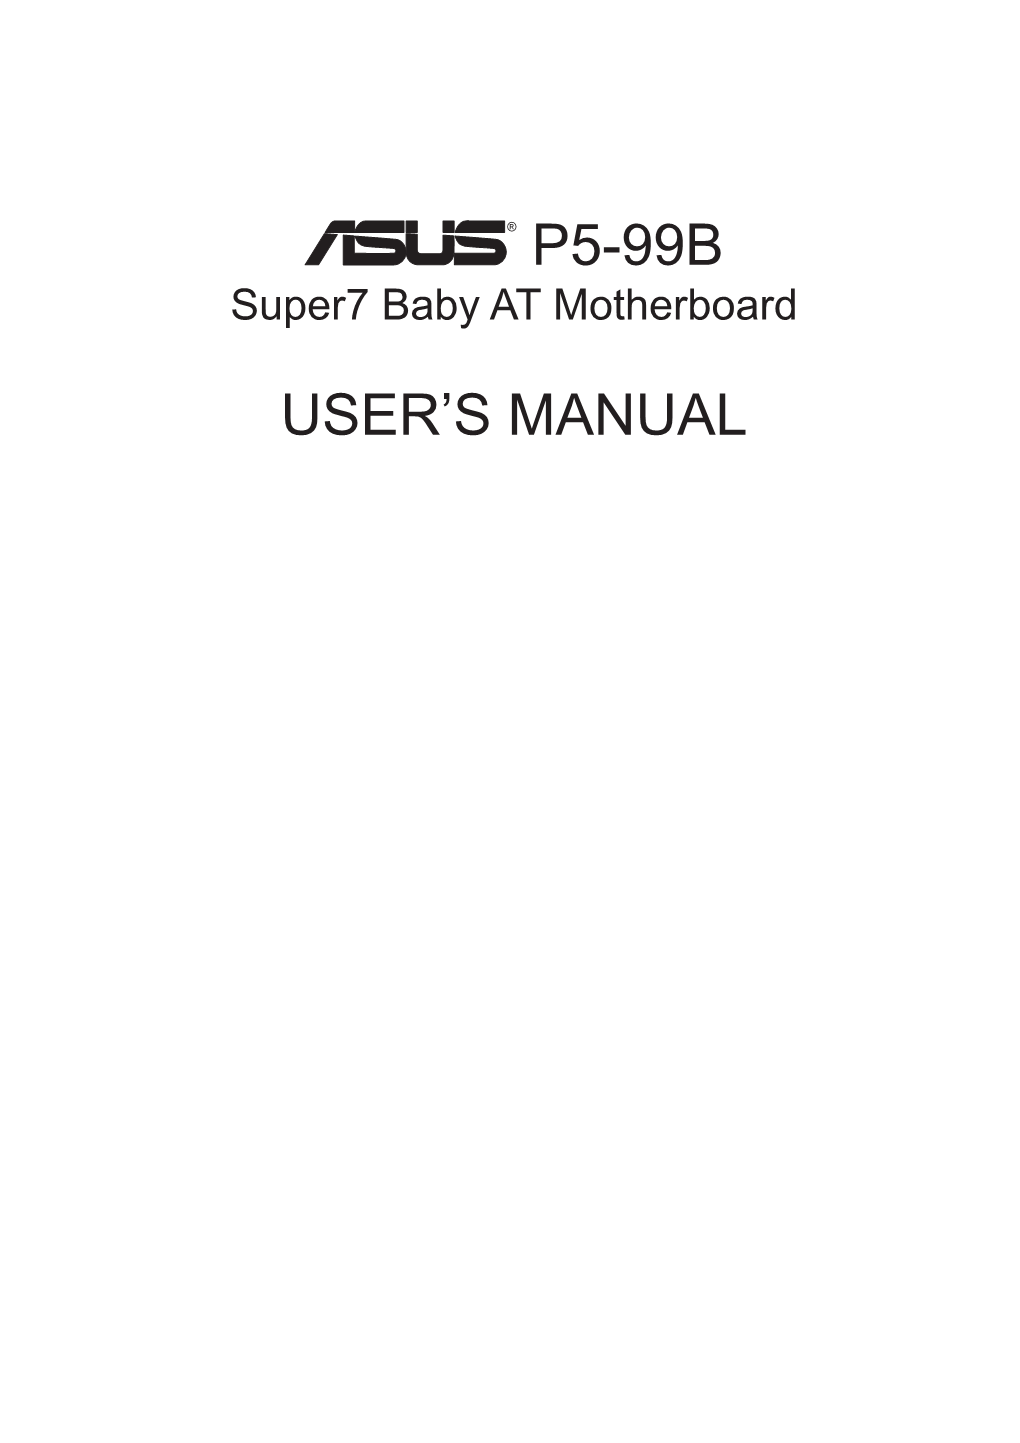 ® P5-99B User's Manual